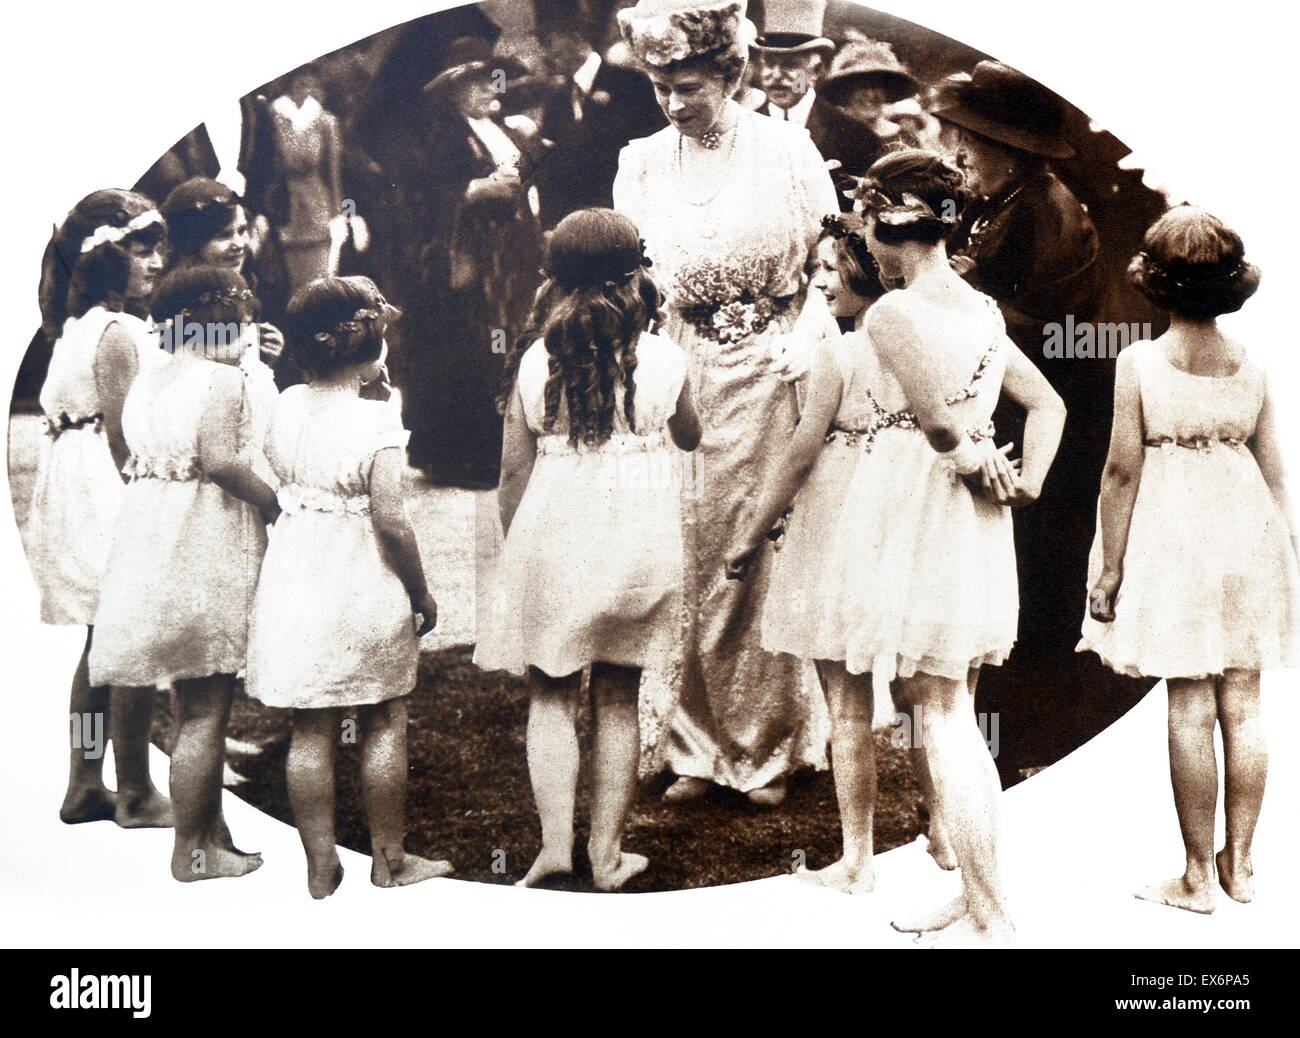 Queen Mary von England von jungen Mädchen bei einer Veranstaltung 1930 begrüßt Stockfoto